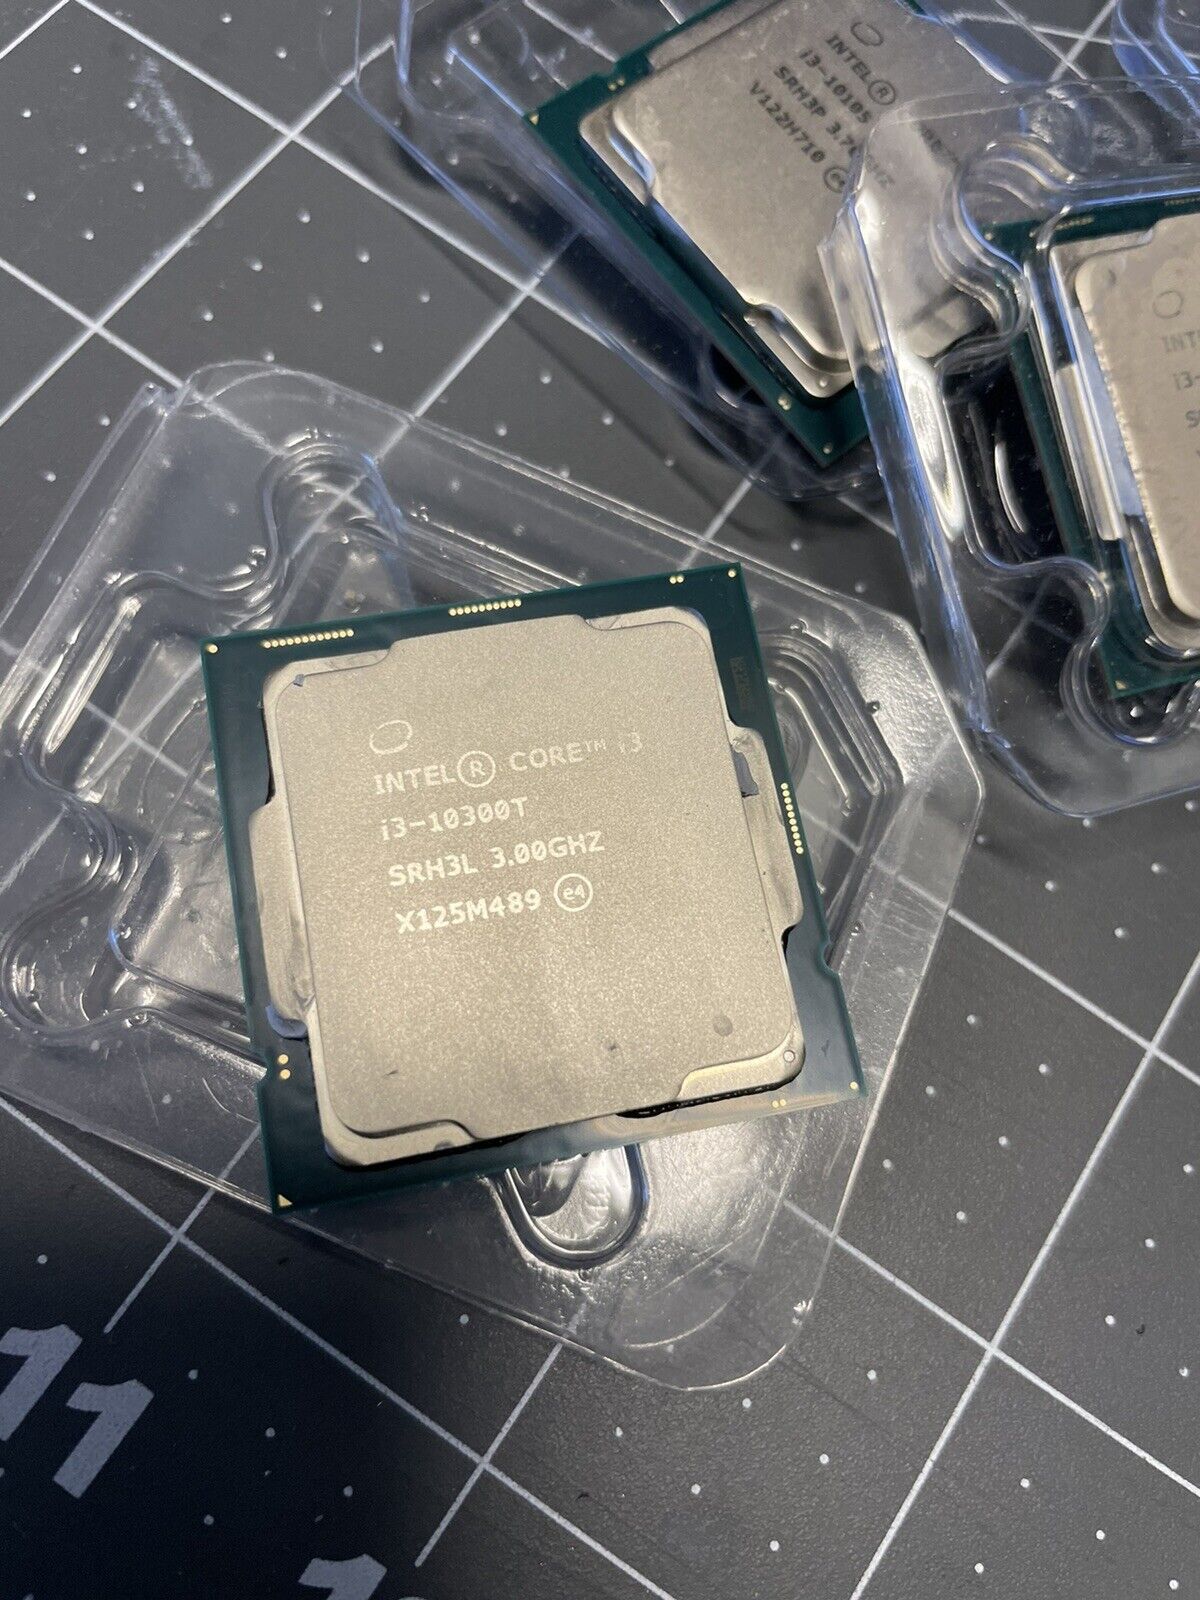 [new System Pull] 10th Gen Intel Core i3-10300T 3.0GHz 4-Core 8MB CPU 35W SRH3L